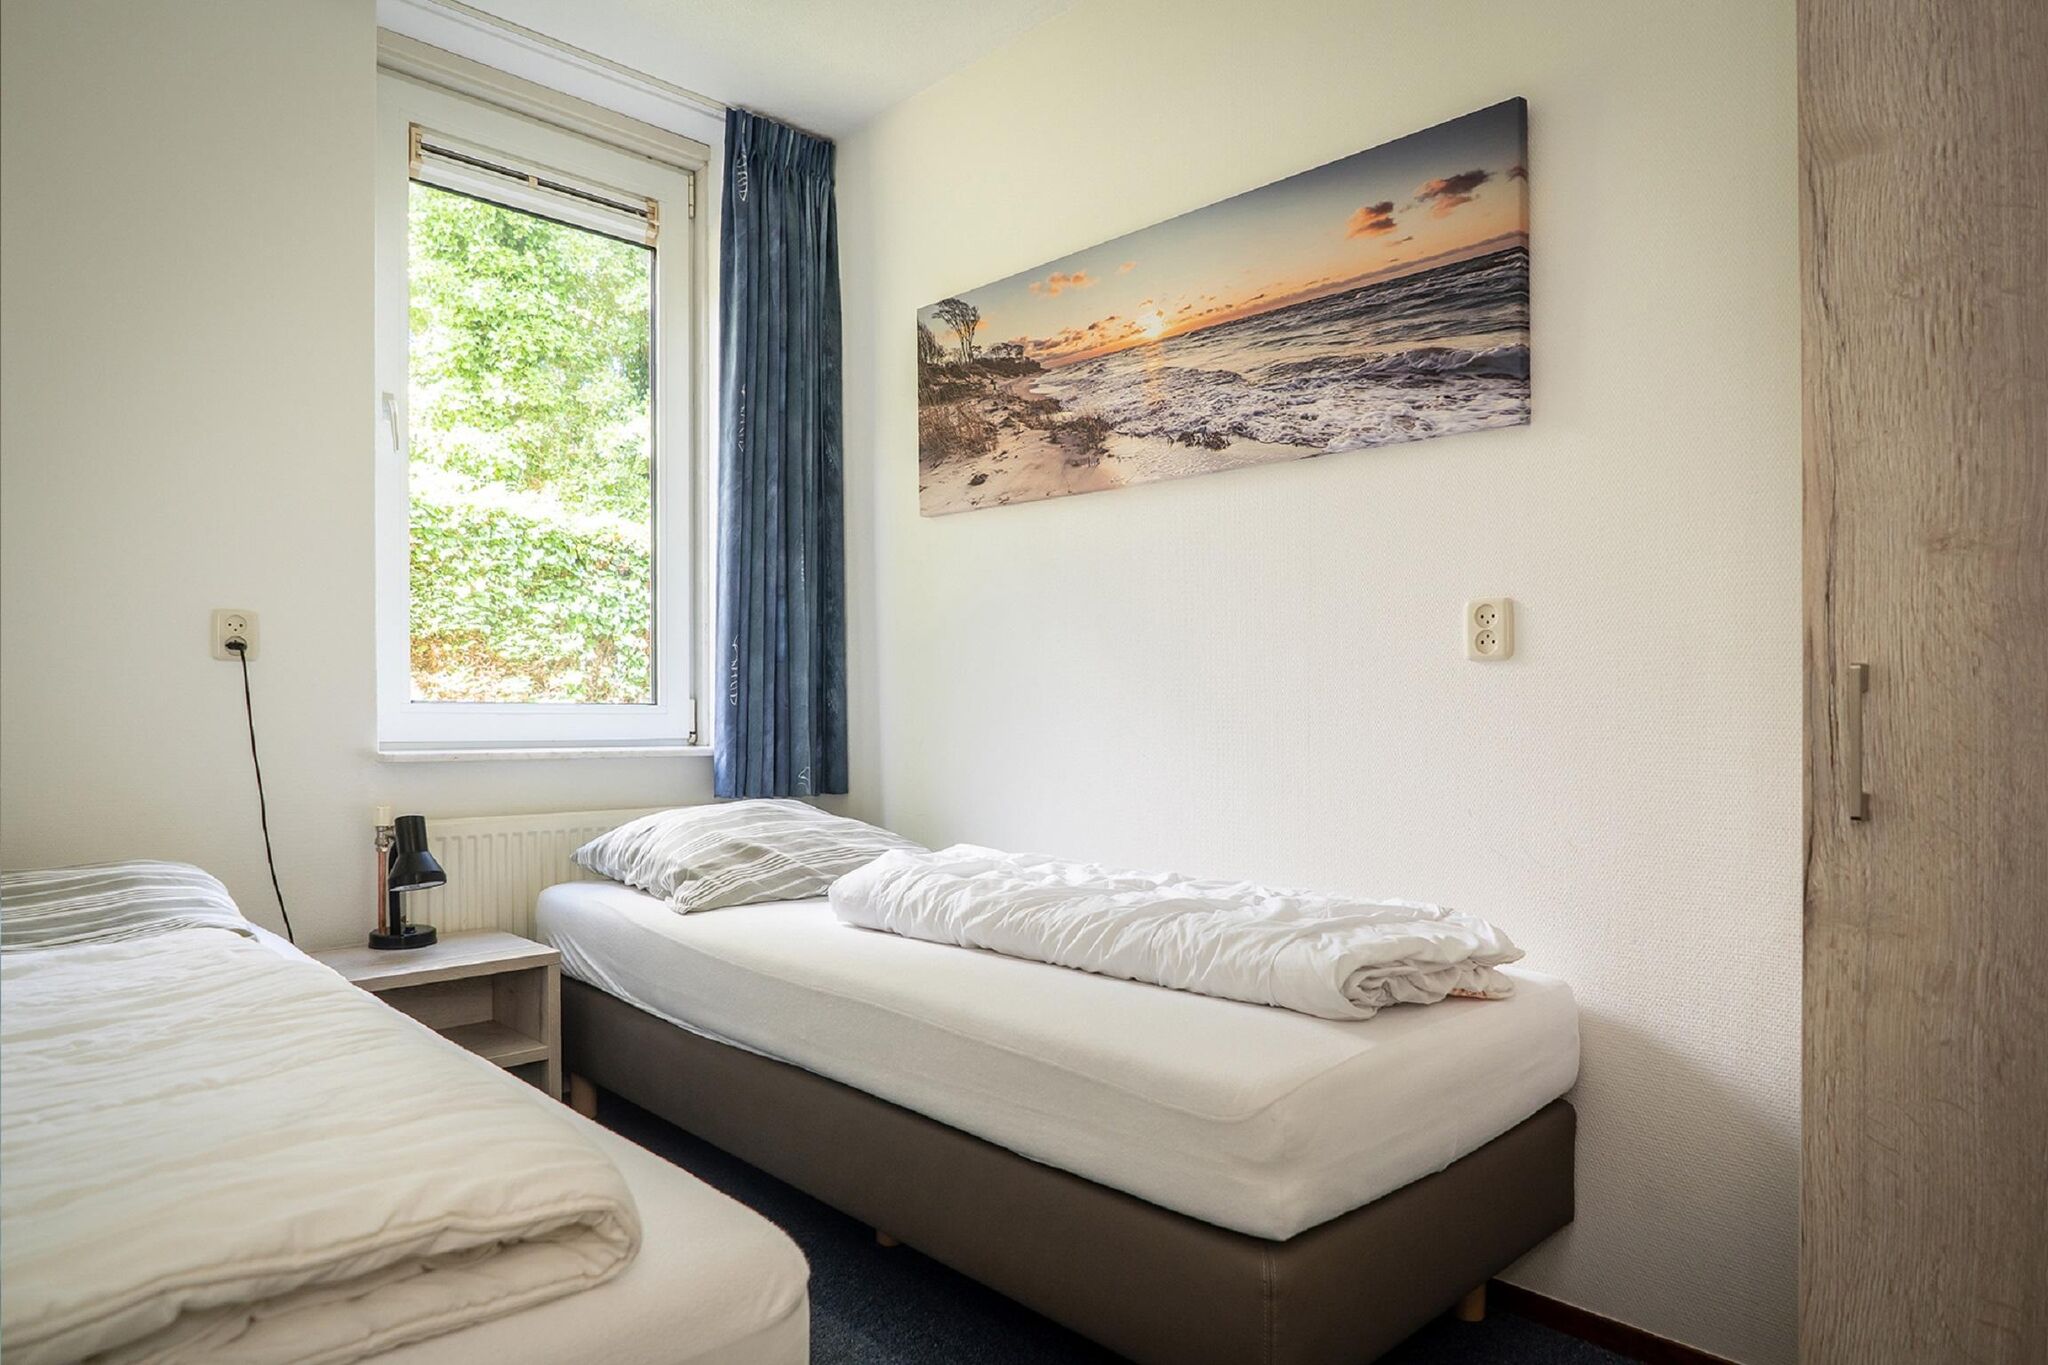 Verzorgd appartement nabij strand in Texel